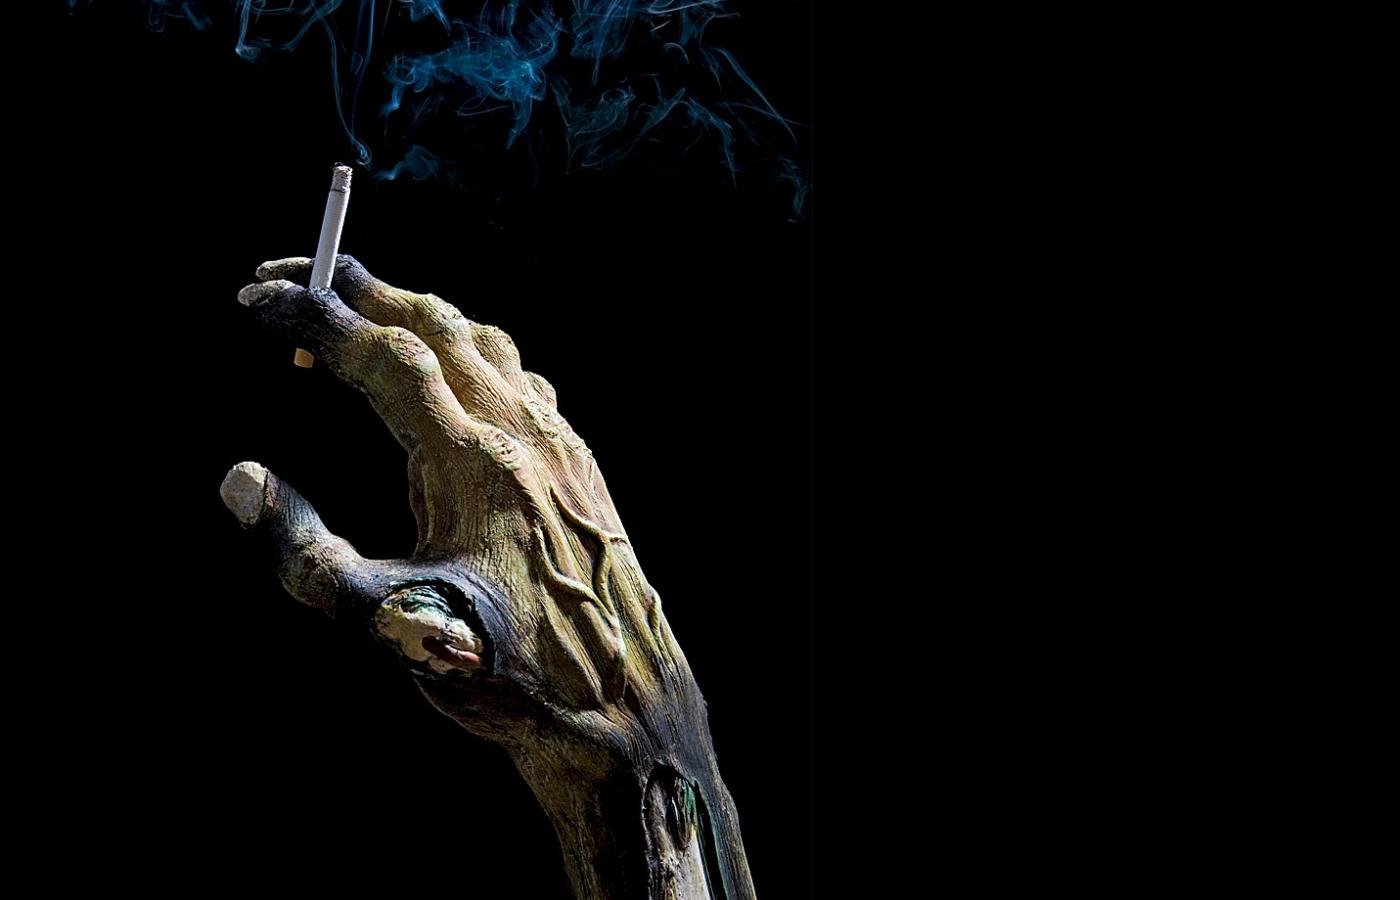 Ustawodawcy liczą na to, że obrzydliwe zdjęcia zmienią społeczny wizerunek palacza - z seksownego kowboja na mało atrakcyjnego kawalera z gnijącymi zębami.